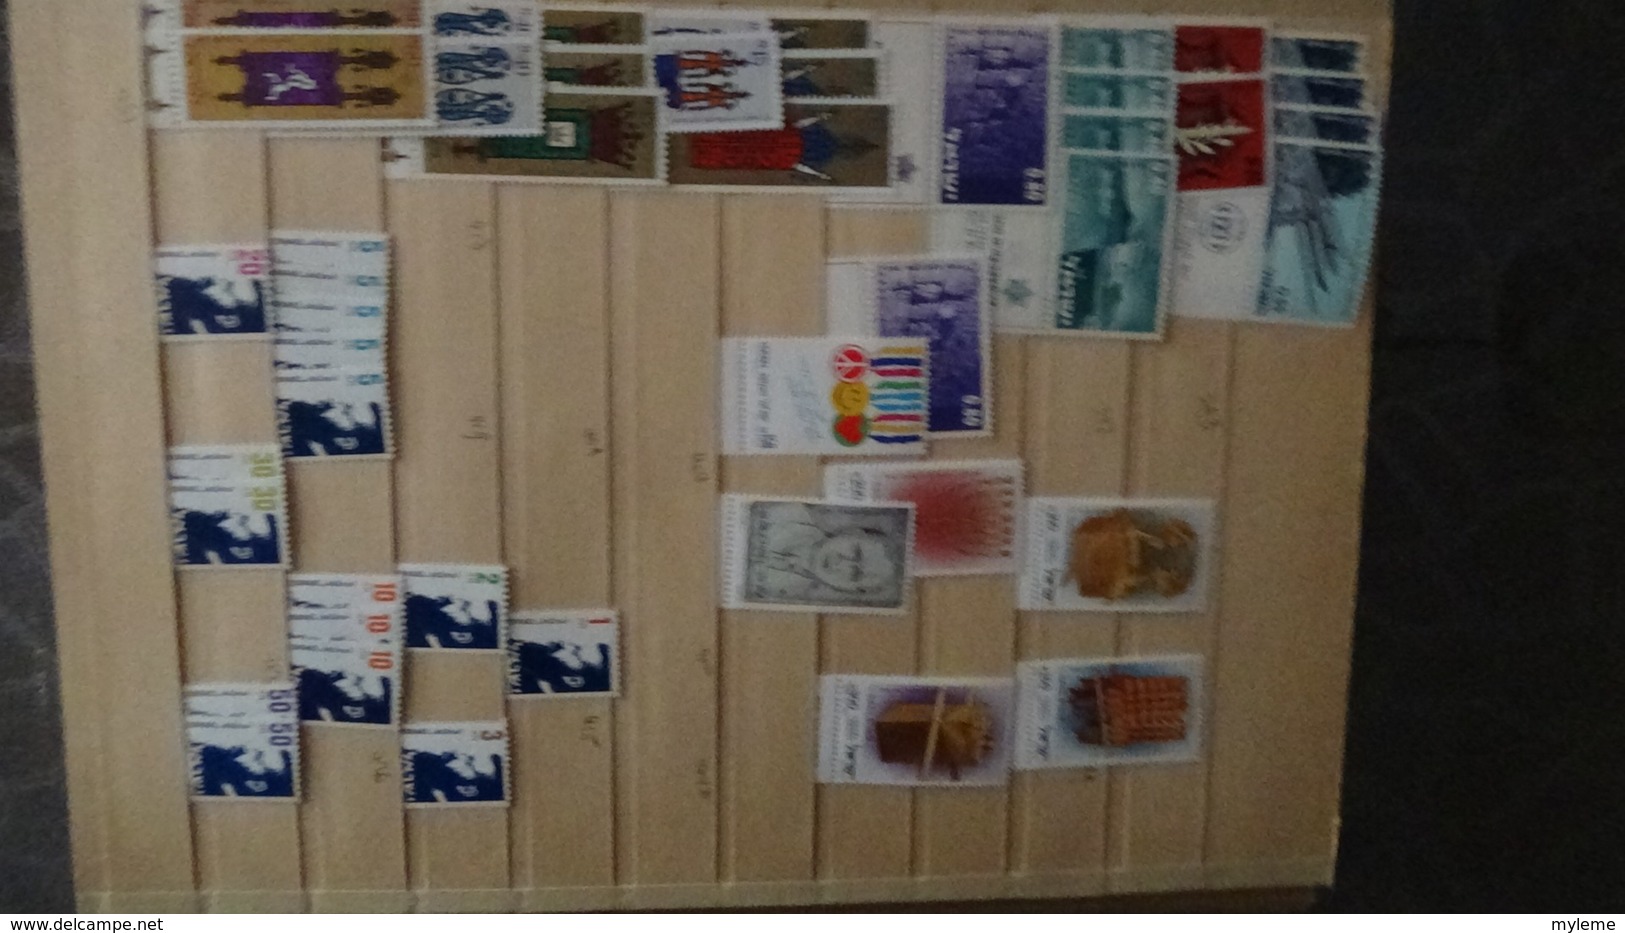 Gros album de stock d'ISRAËL tous les timbres sont avec tabs et ** !!!. A saisir !!!